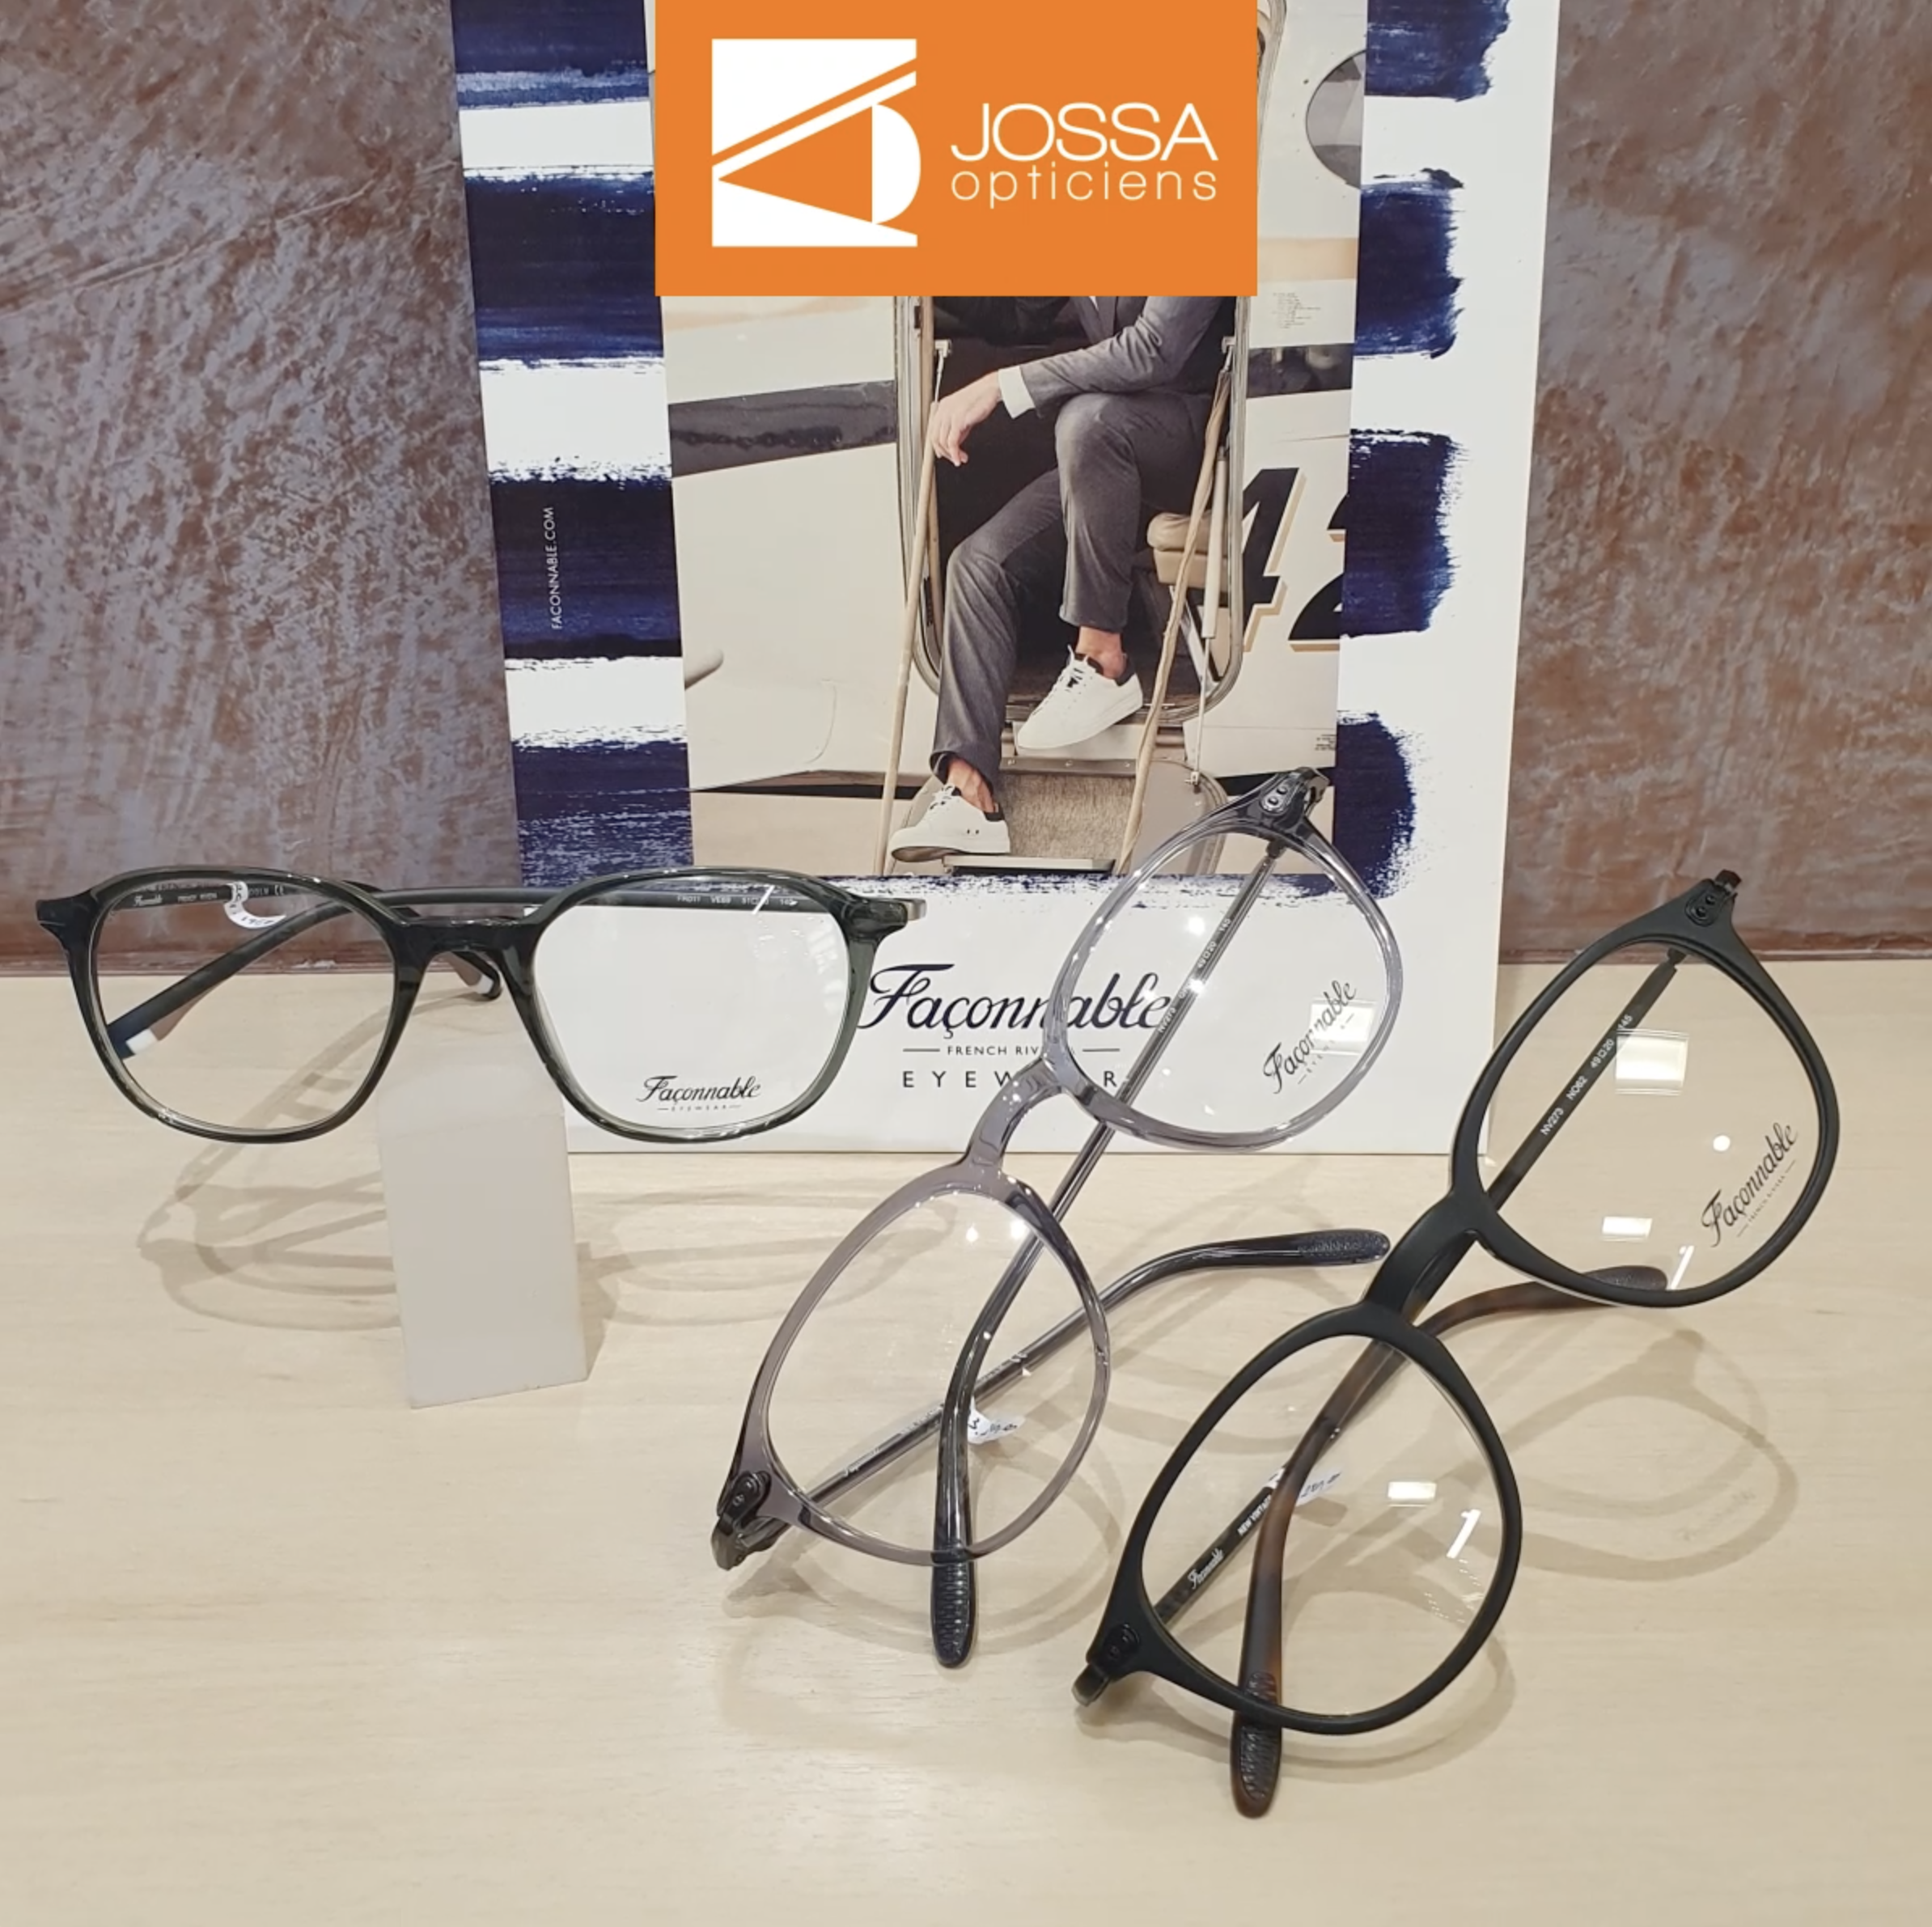 Découvrez les lunettes Façonnable, une marque que les opticiens Jossa affectionnent beaucoup.